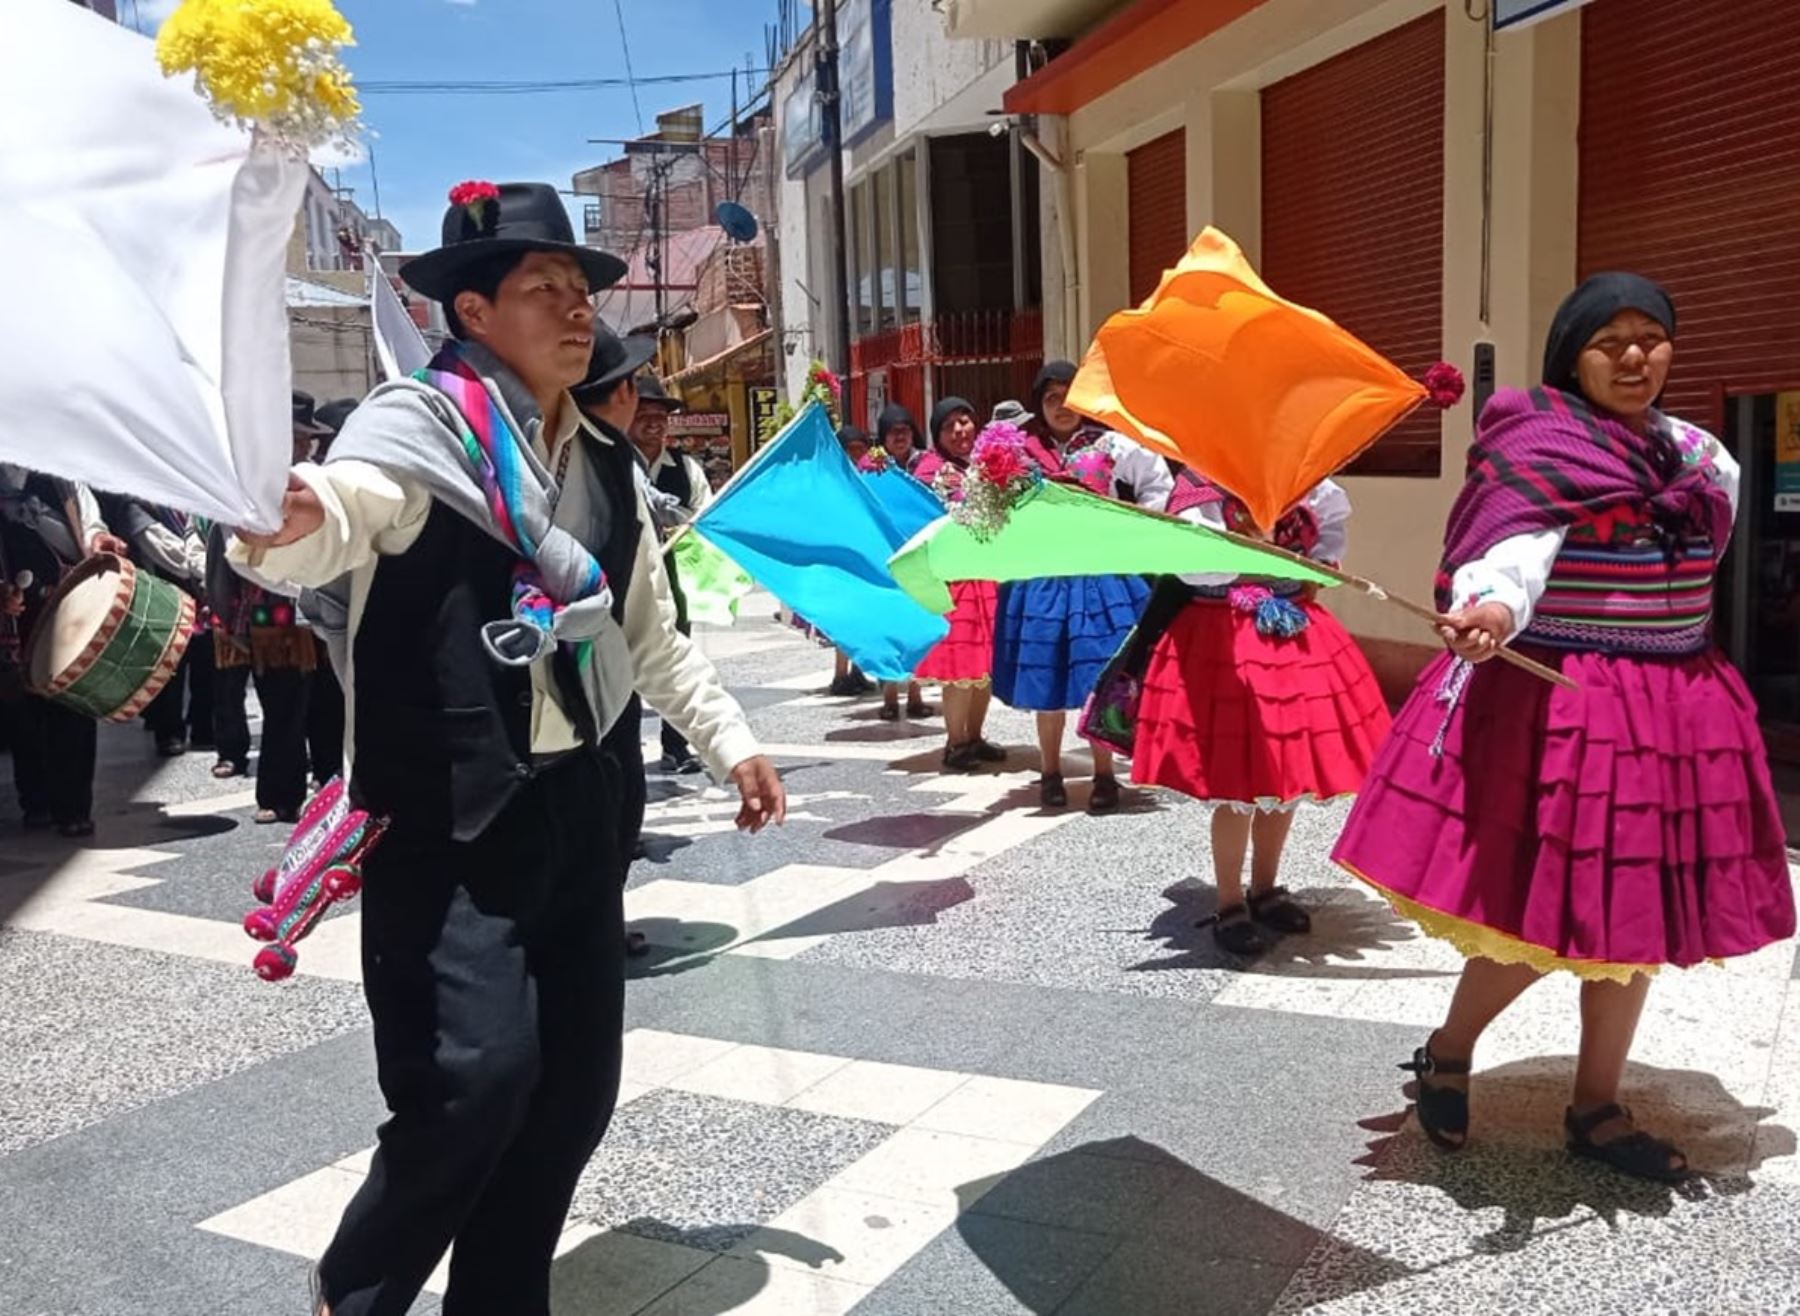 La isla de Amantaní, región Puno, celebra desde hoy jueves 11 hasta el martes 23 de enero, la Festividad de San Sebastián Pachatata y Pachamama del lago Titicaca con diversas danzas originarias. Foto: Alberto Alejo